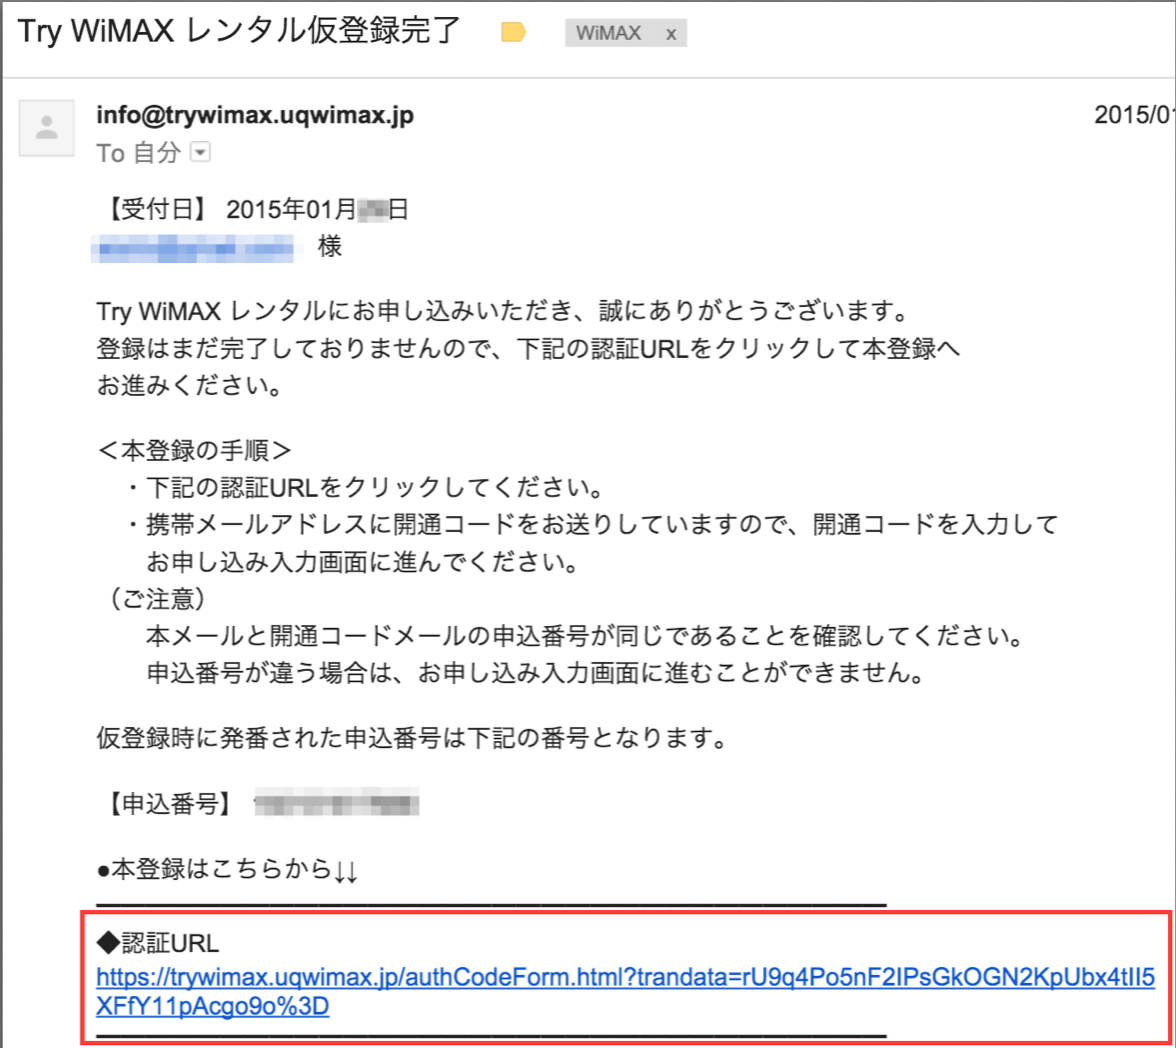 WiMAX お試し レンタル 認証URL